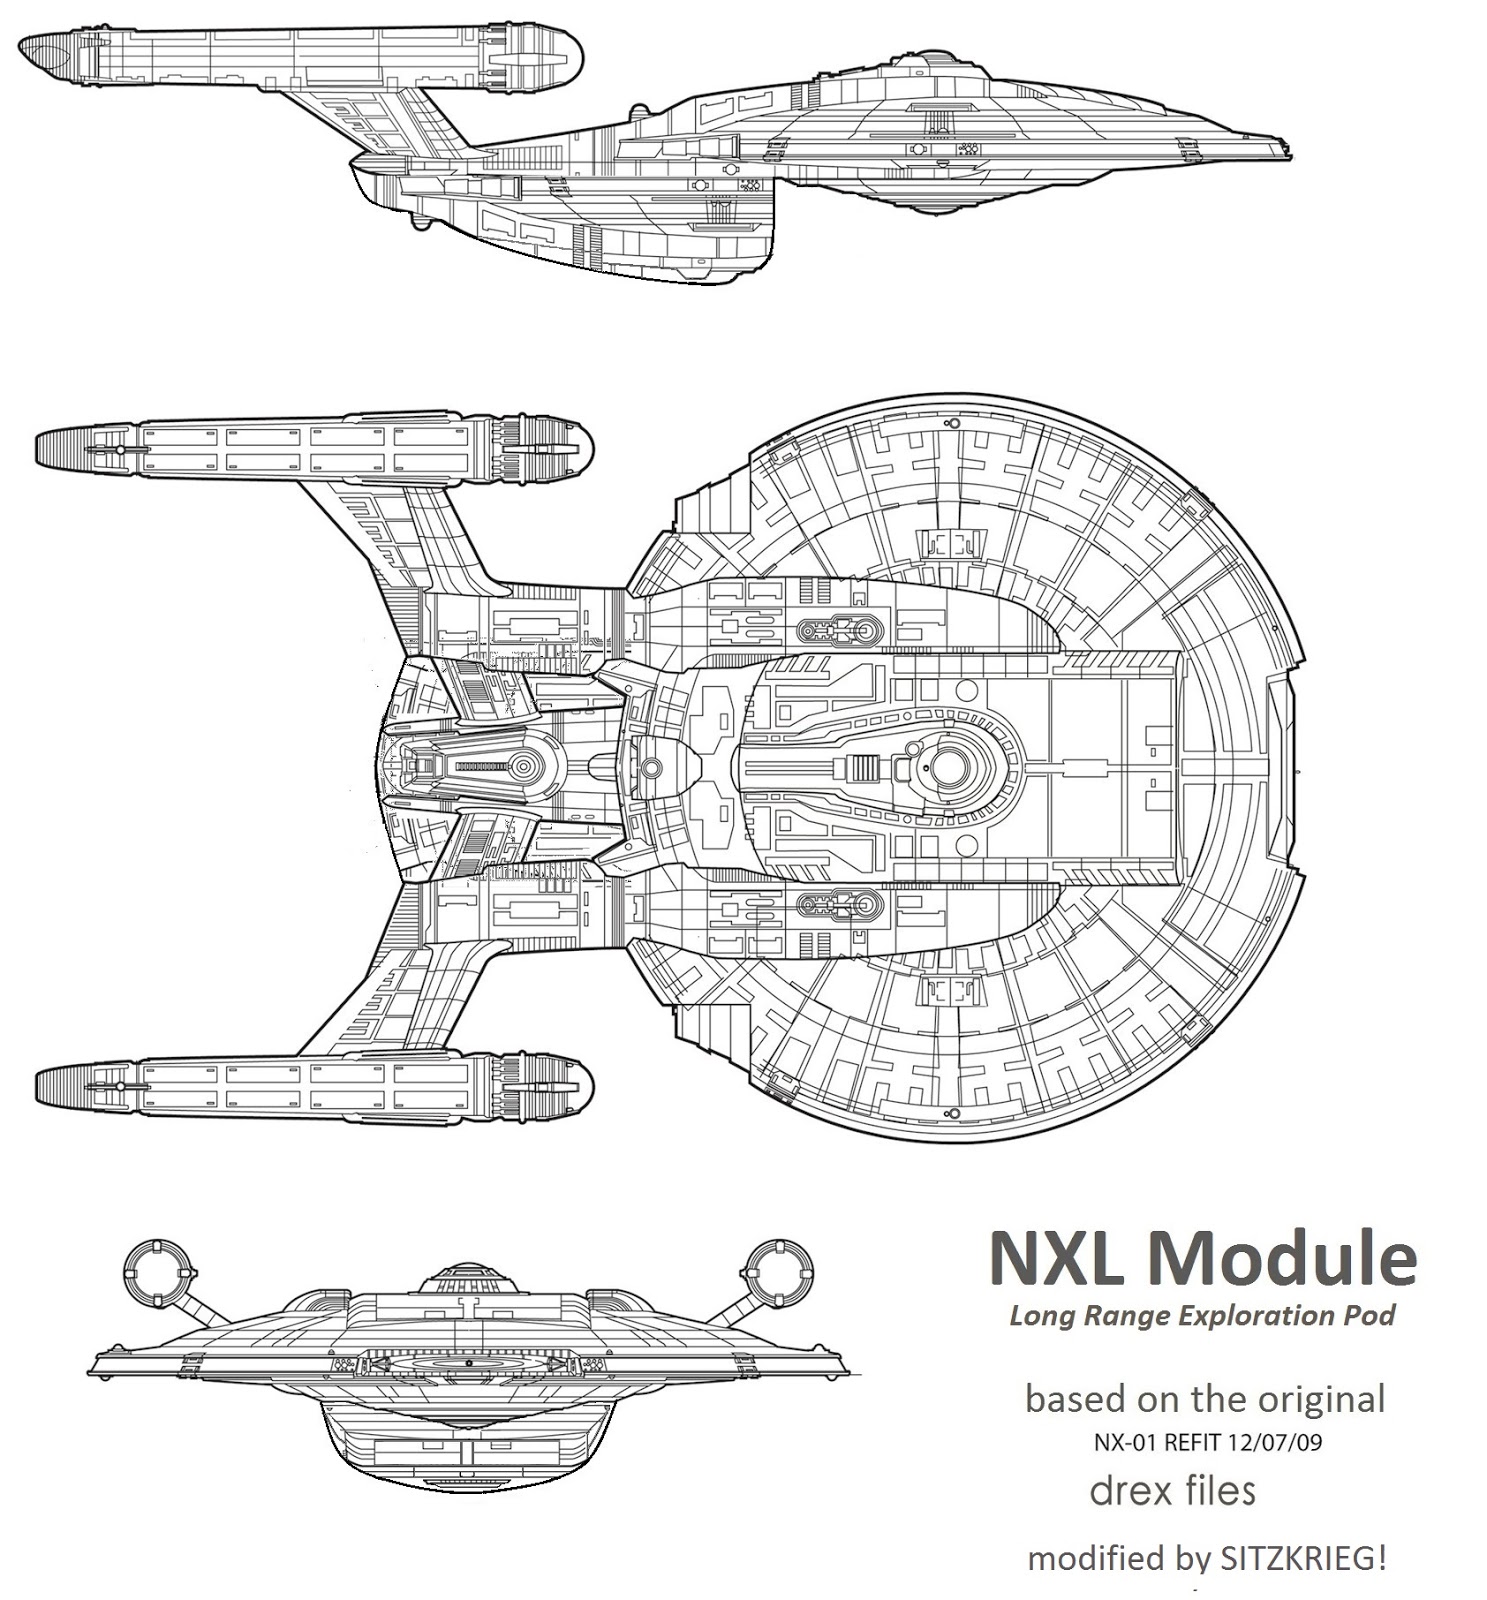 Original NXL mockup